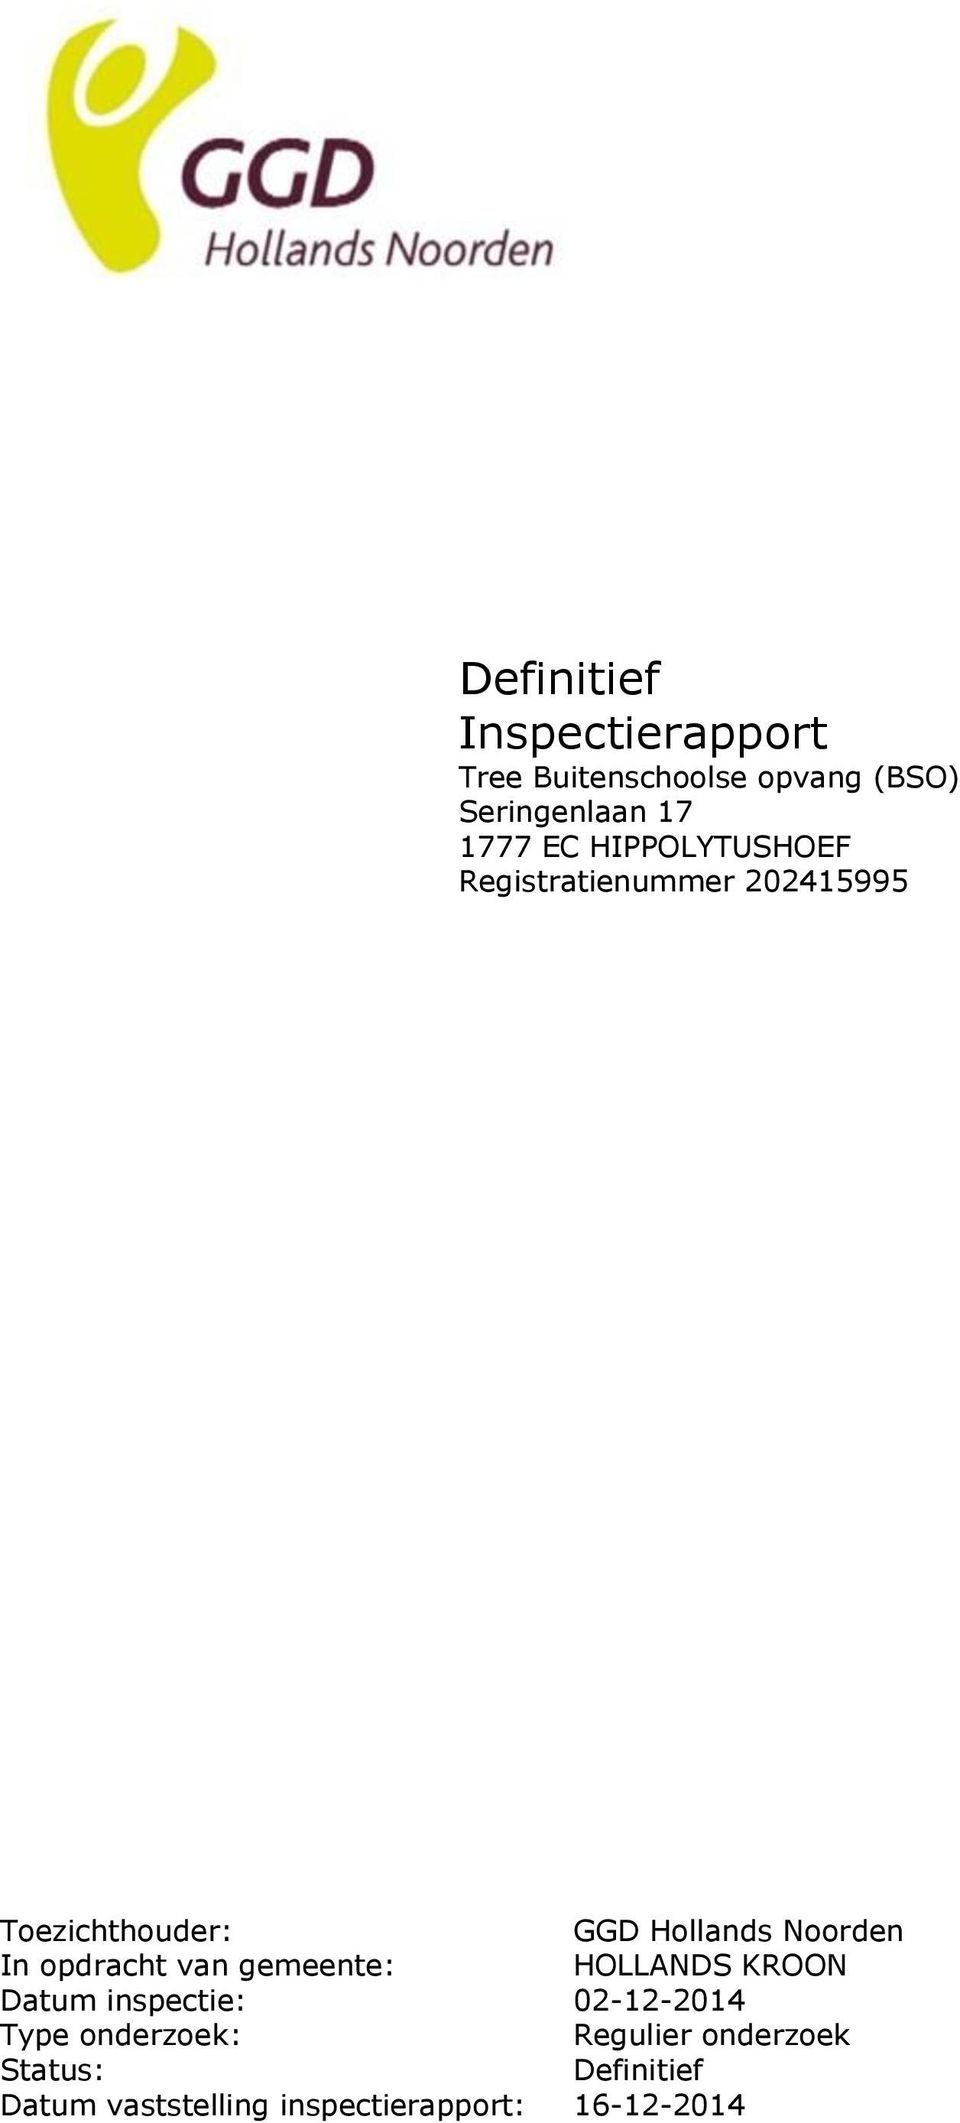 In opdracht van gemeente: HOLLANDS KROON Datum inspectie: 02-12-2014 Type onderzoek